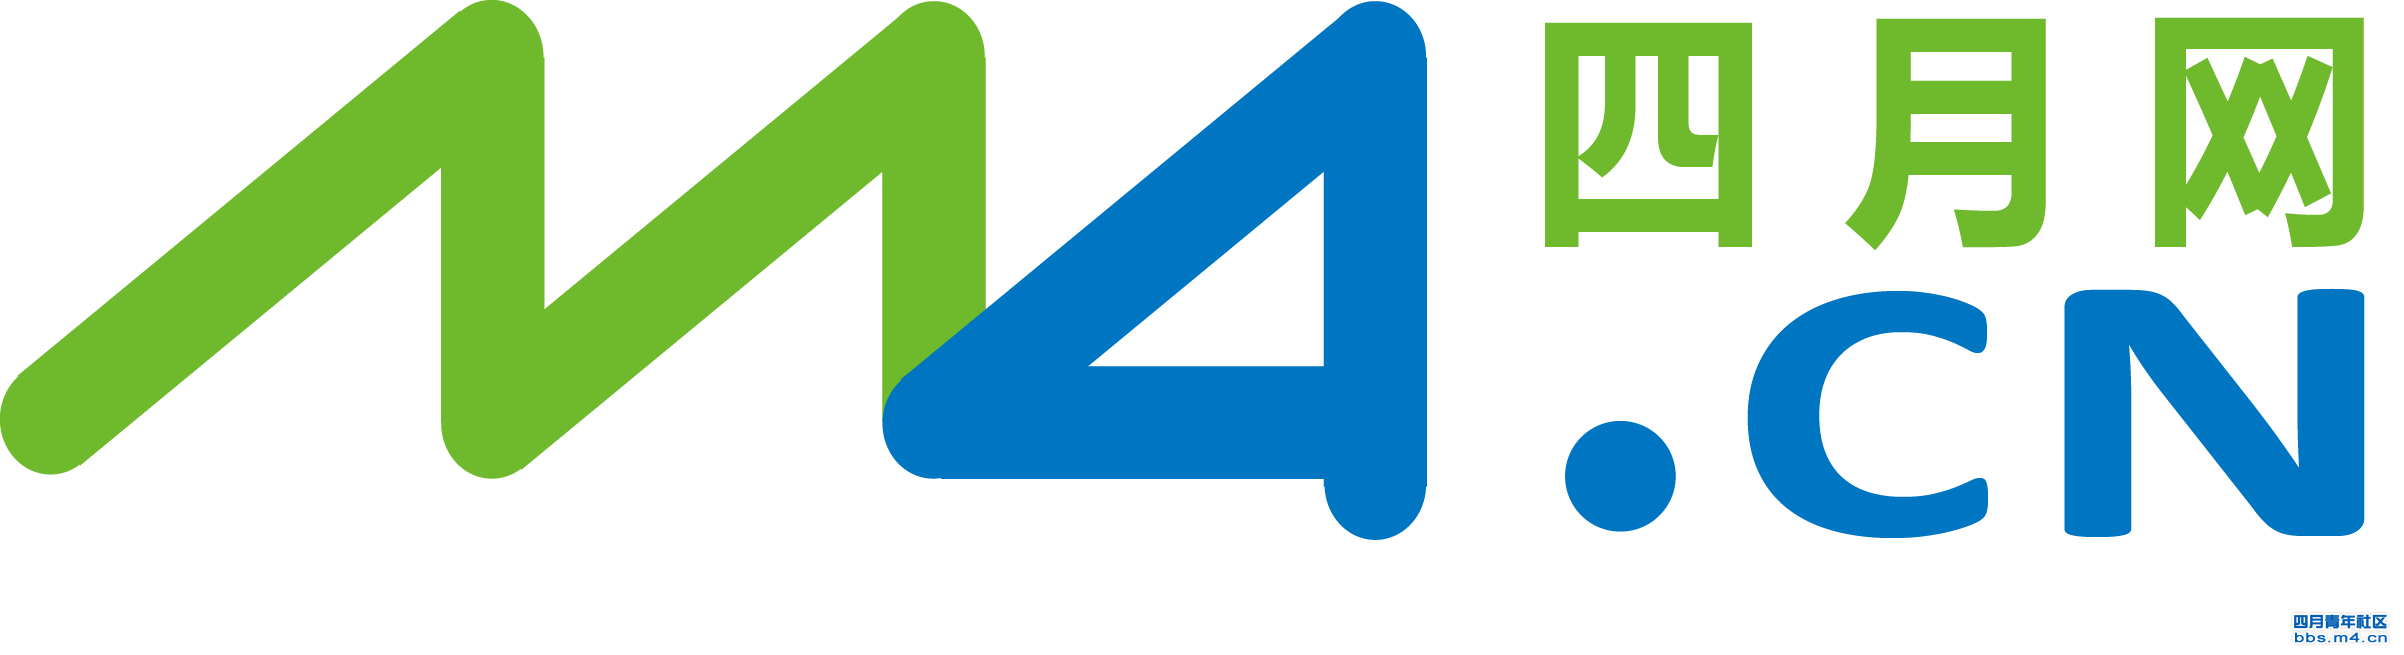 m4_logo.png